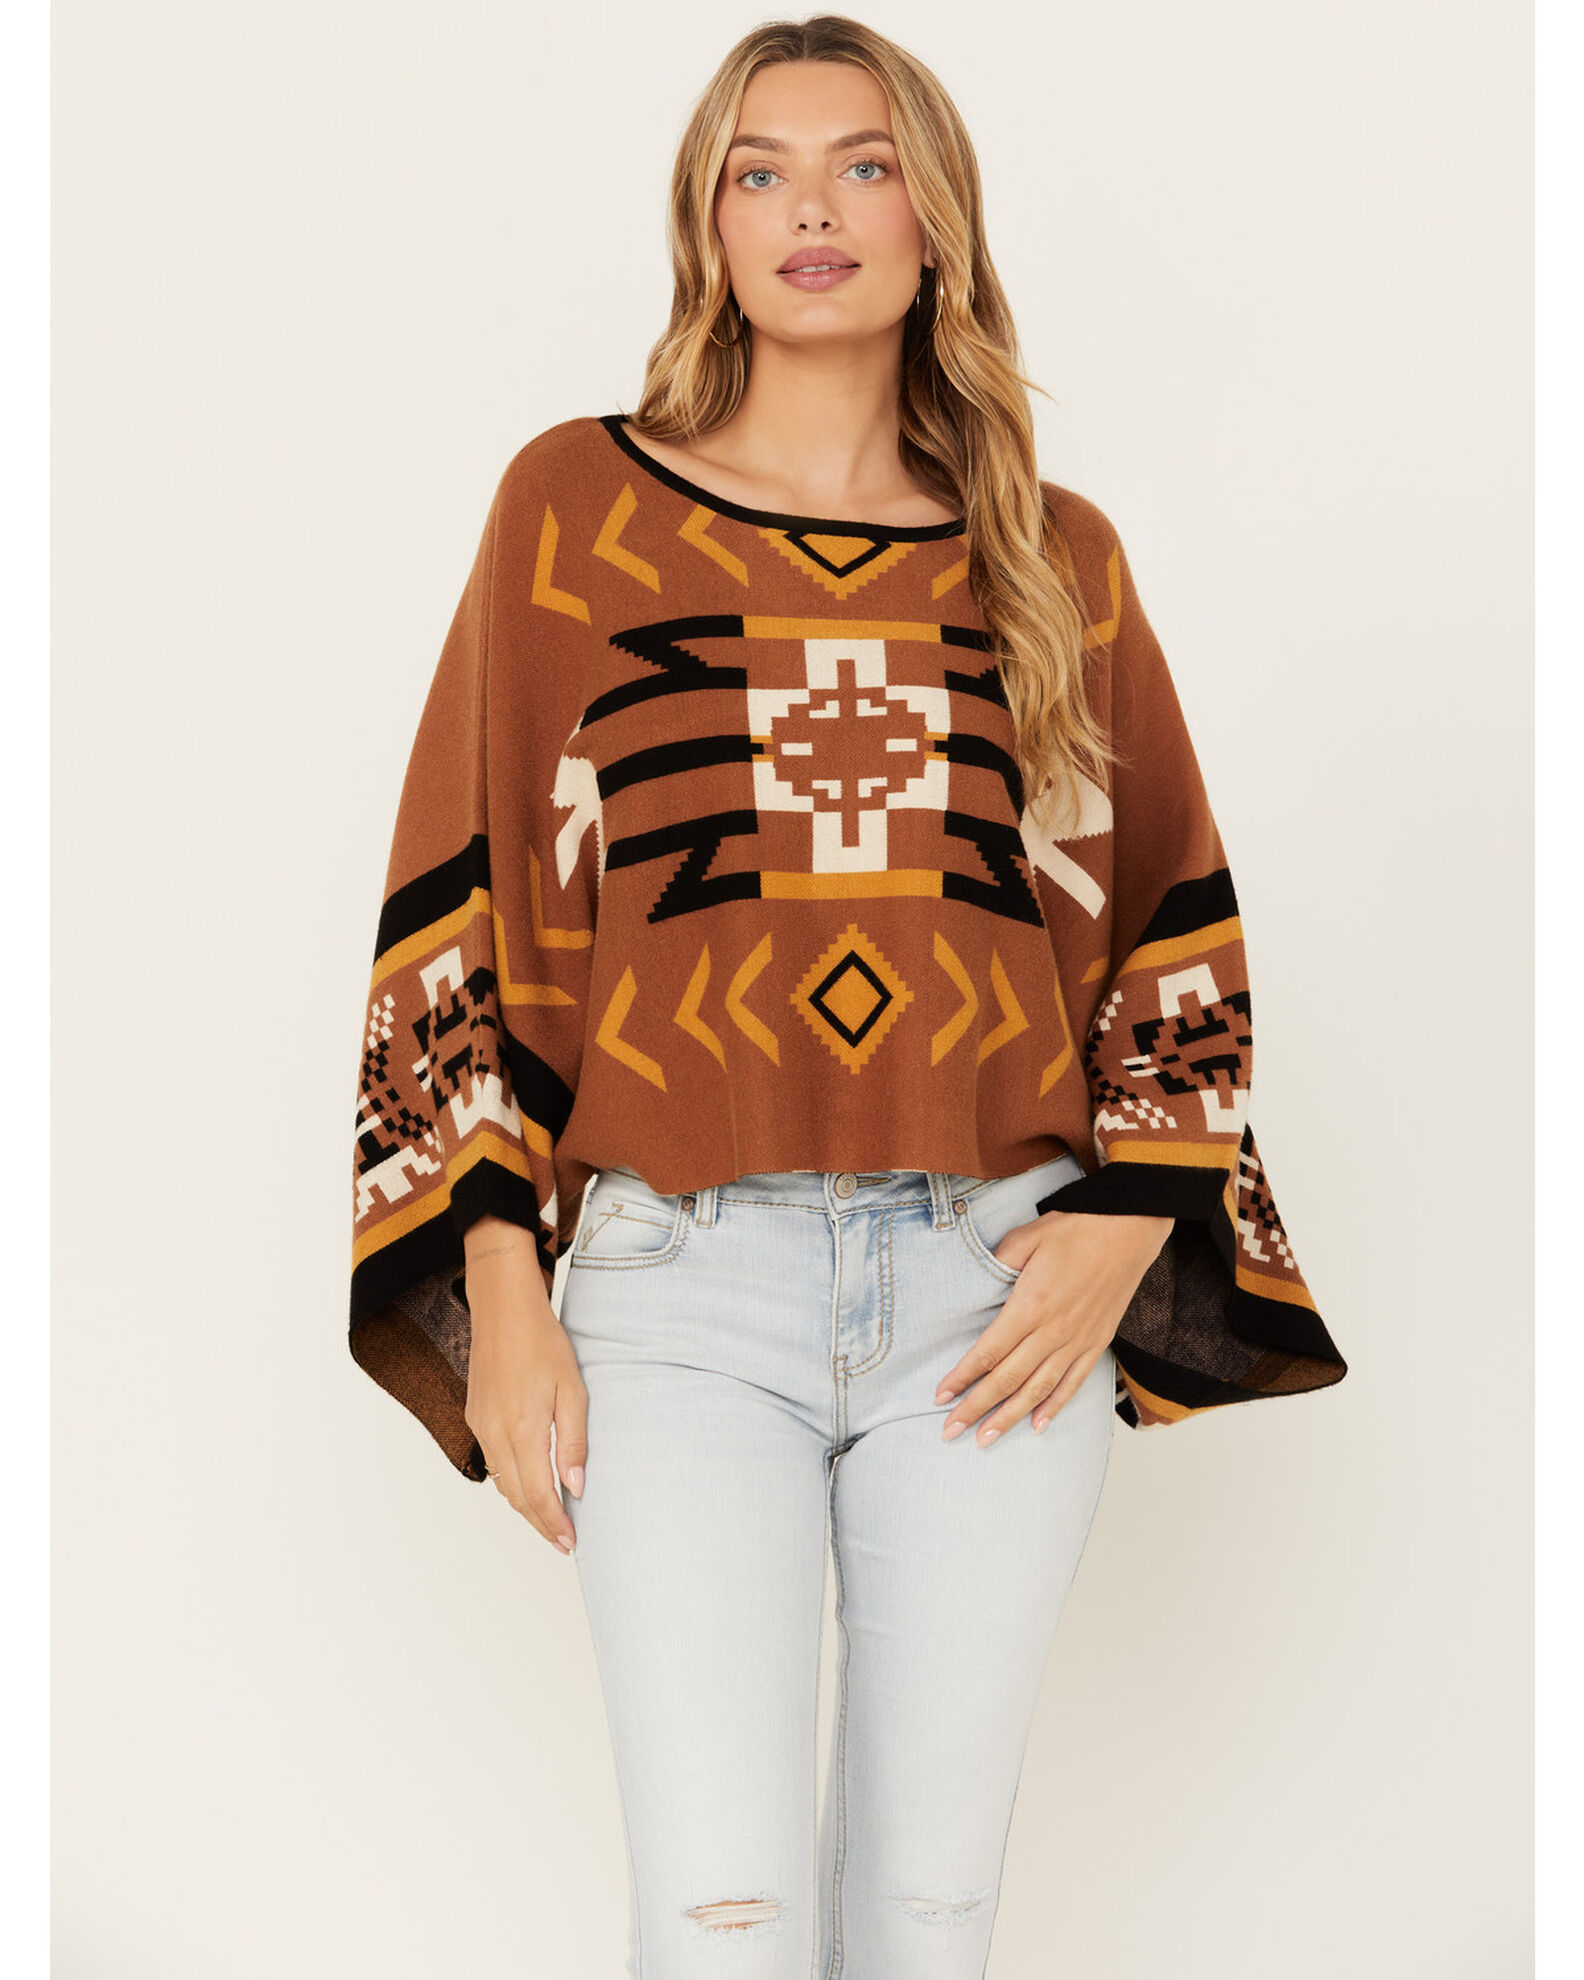 Cotton & Rye Women's Southwestern Print Poncho Sweater